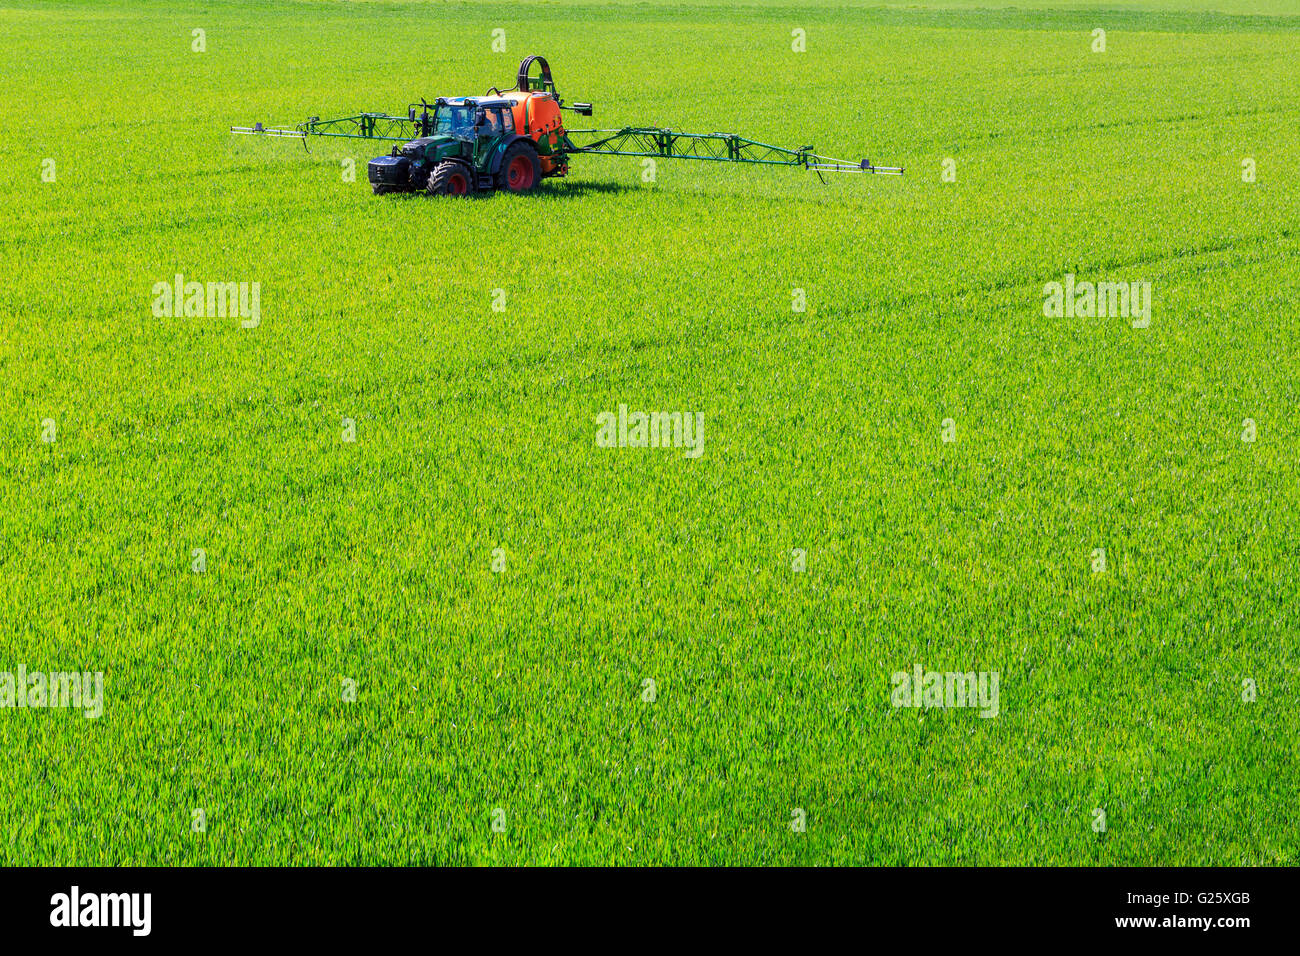 La pulvérisation de pesticides glyphosate du tracteur sur un champ de maïs Banque D'Images